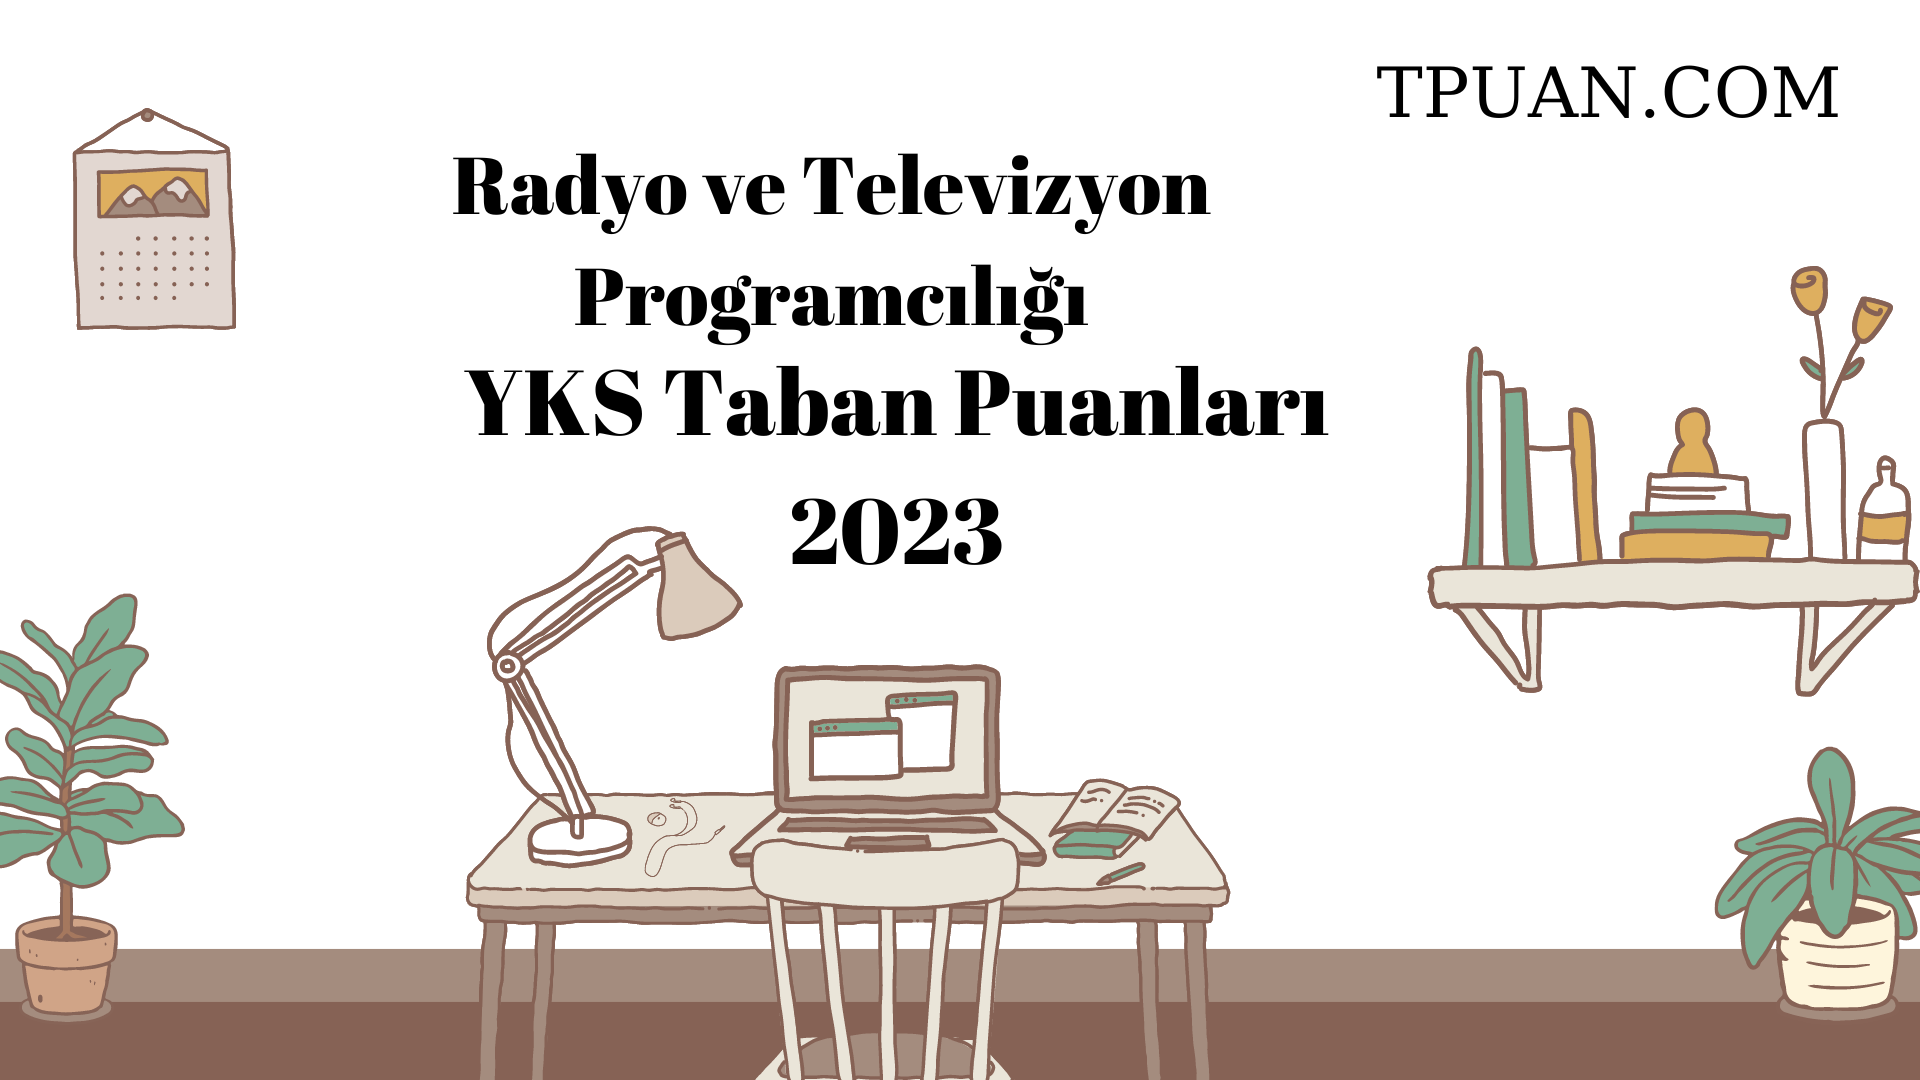  Radyo ve Televizyon Programcılığı YKS Taban Puanları 2023